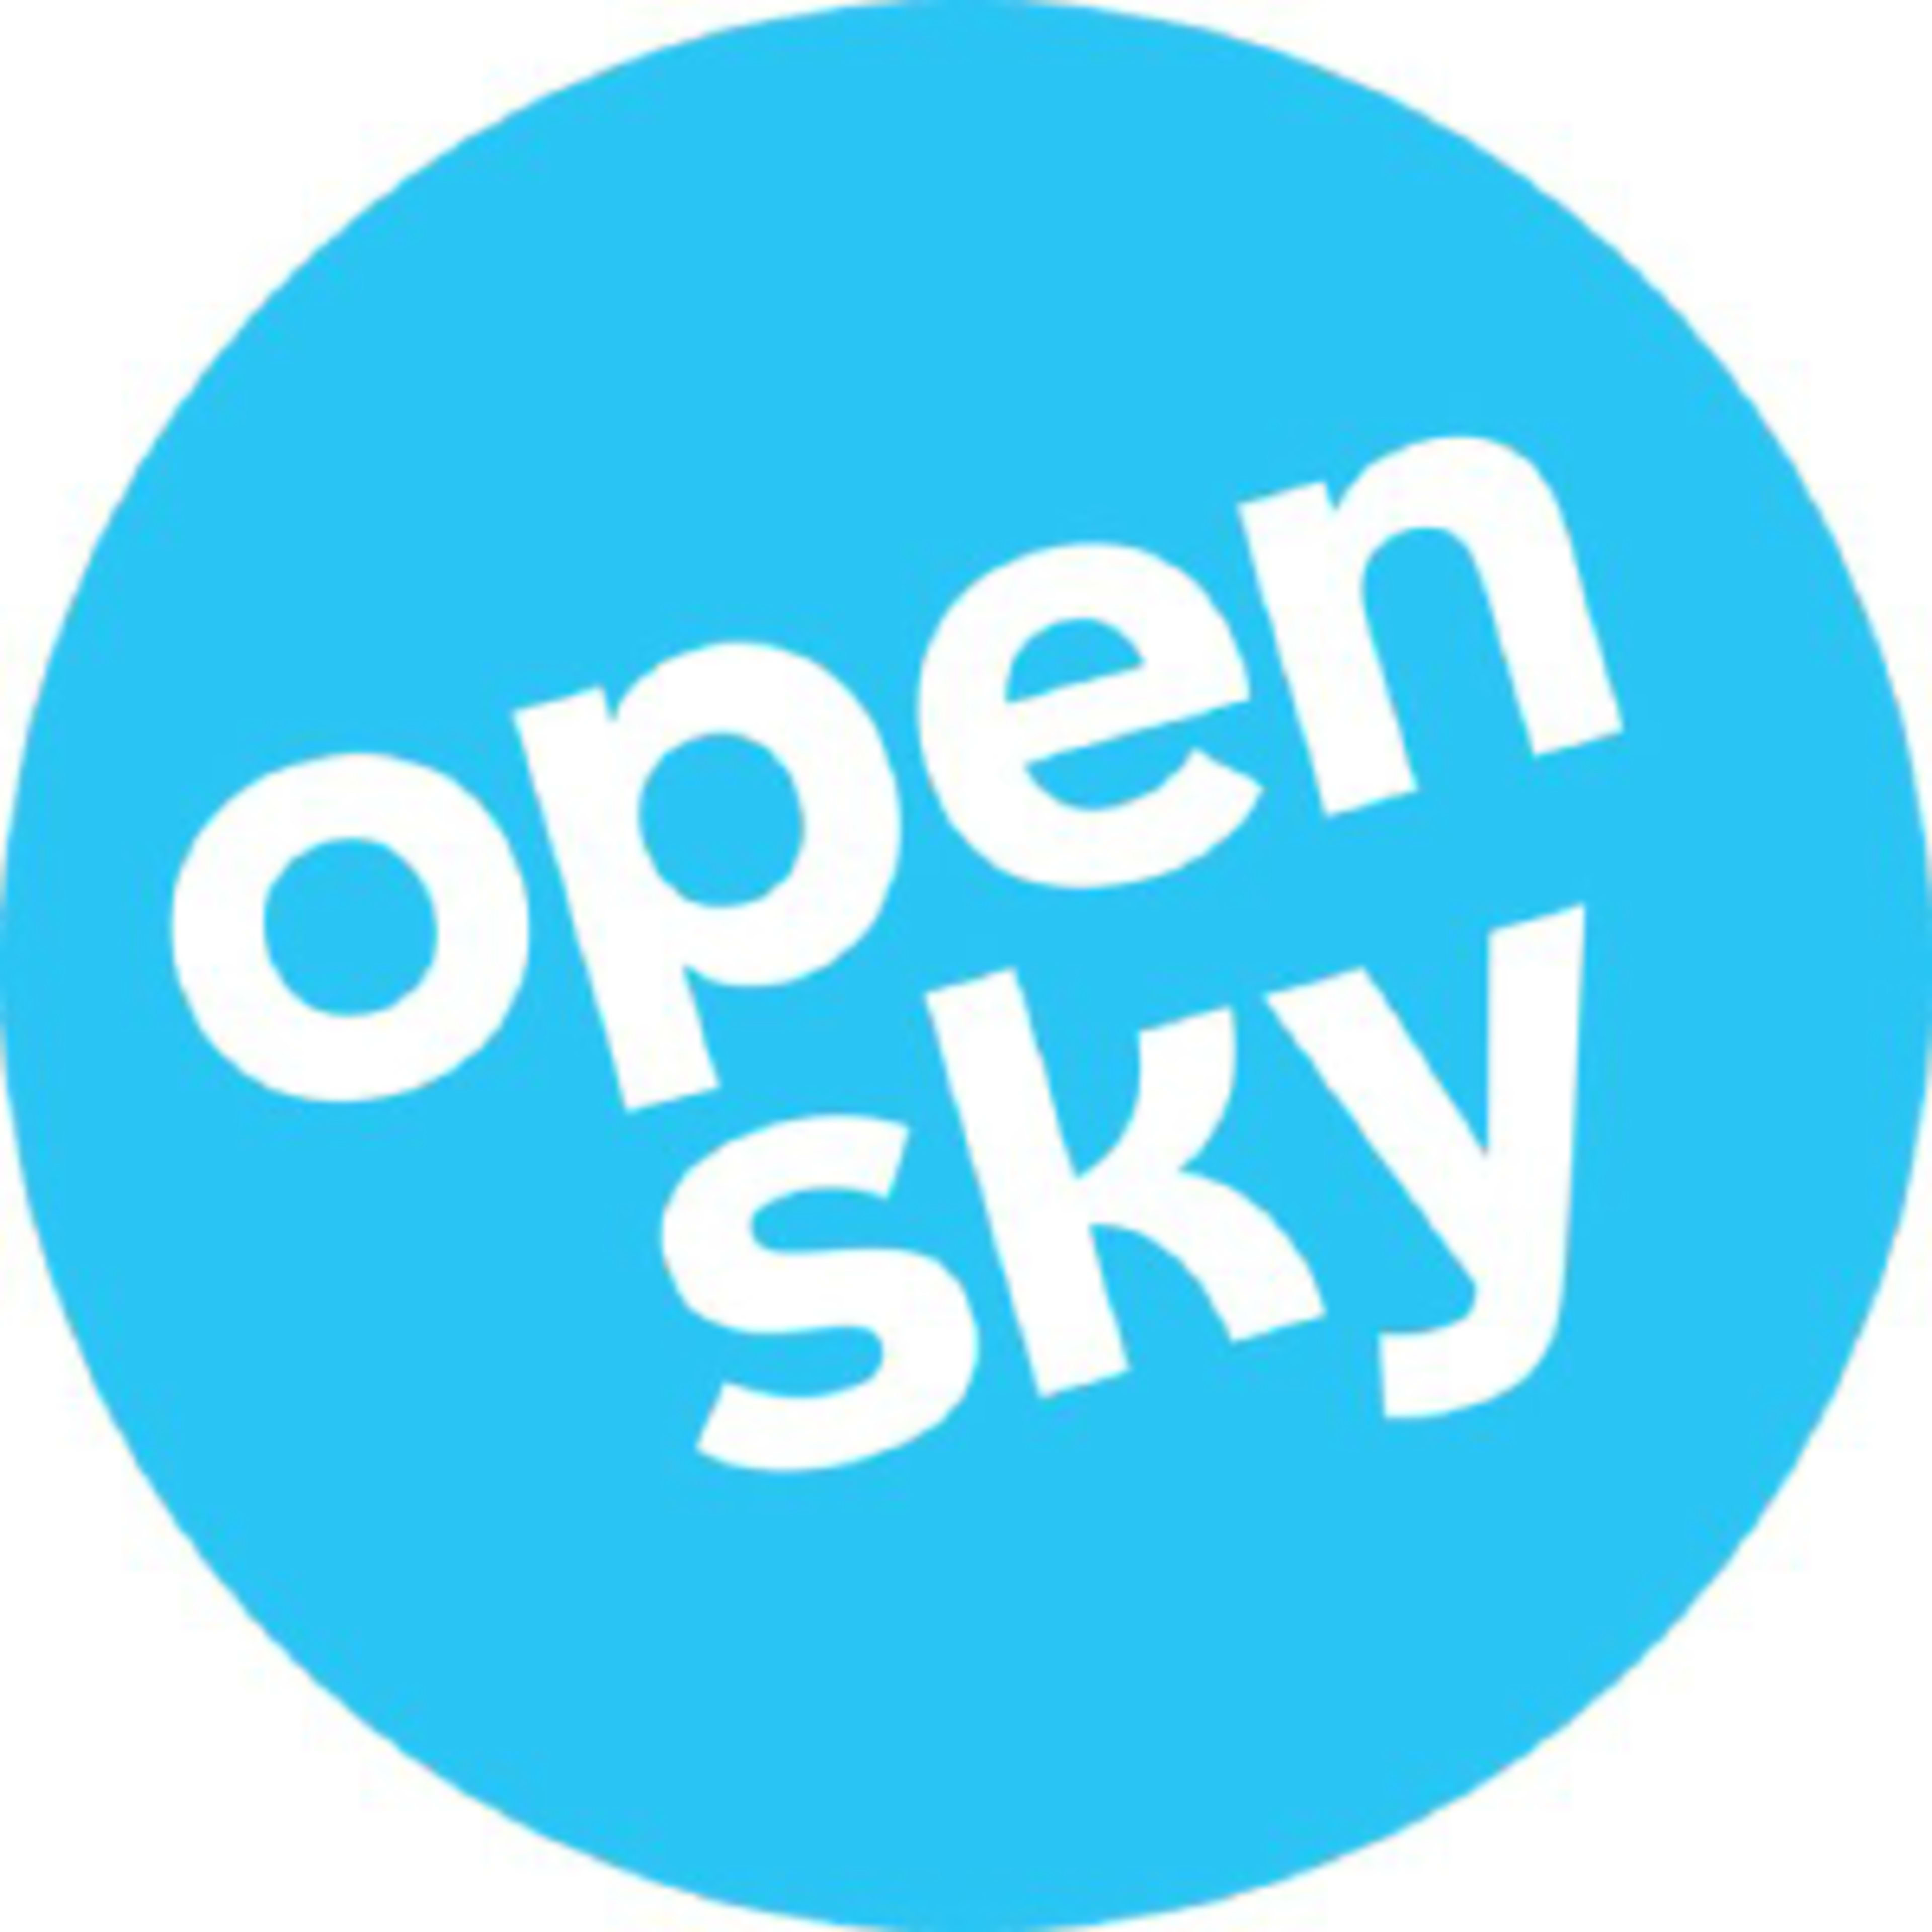 OpenSky Code